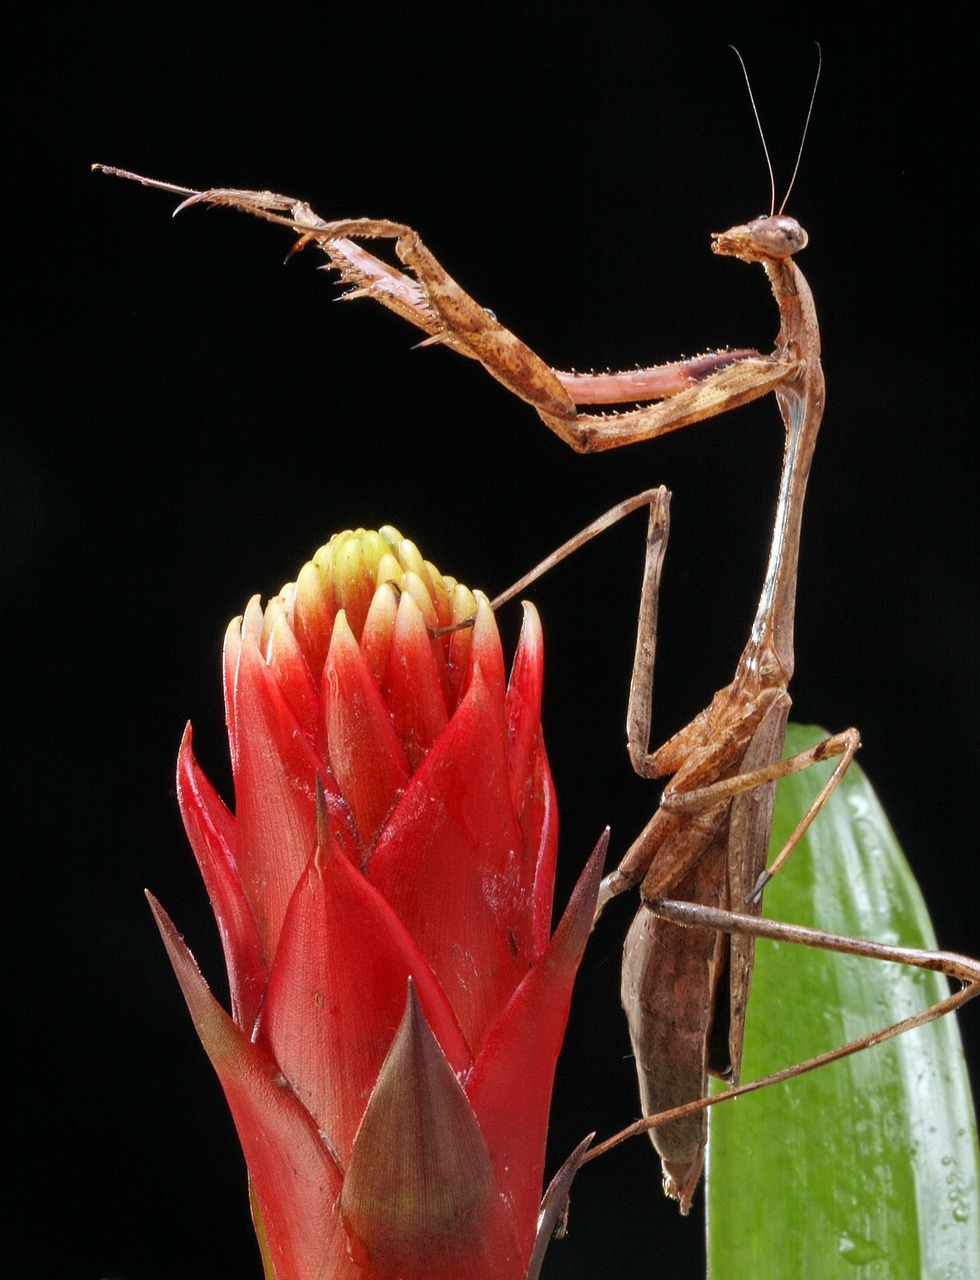 praying mantis close-up macro free photo